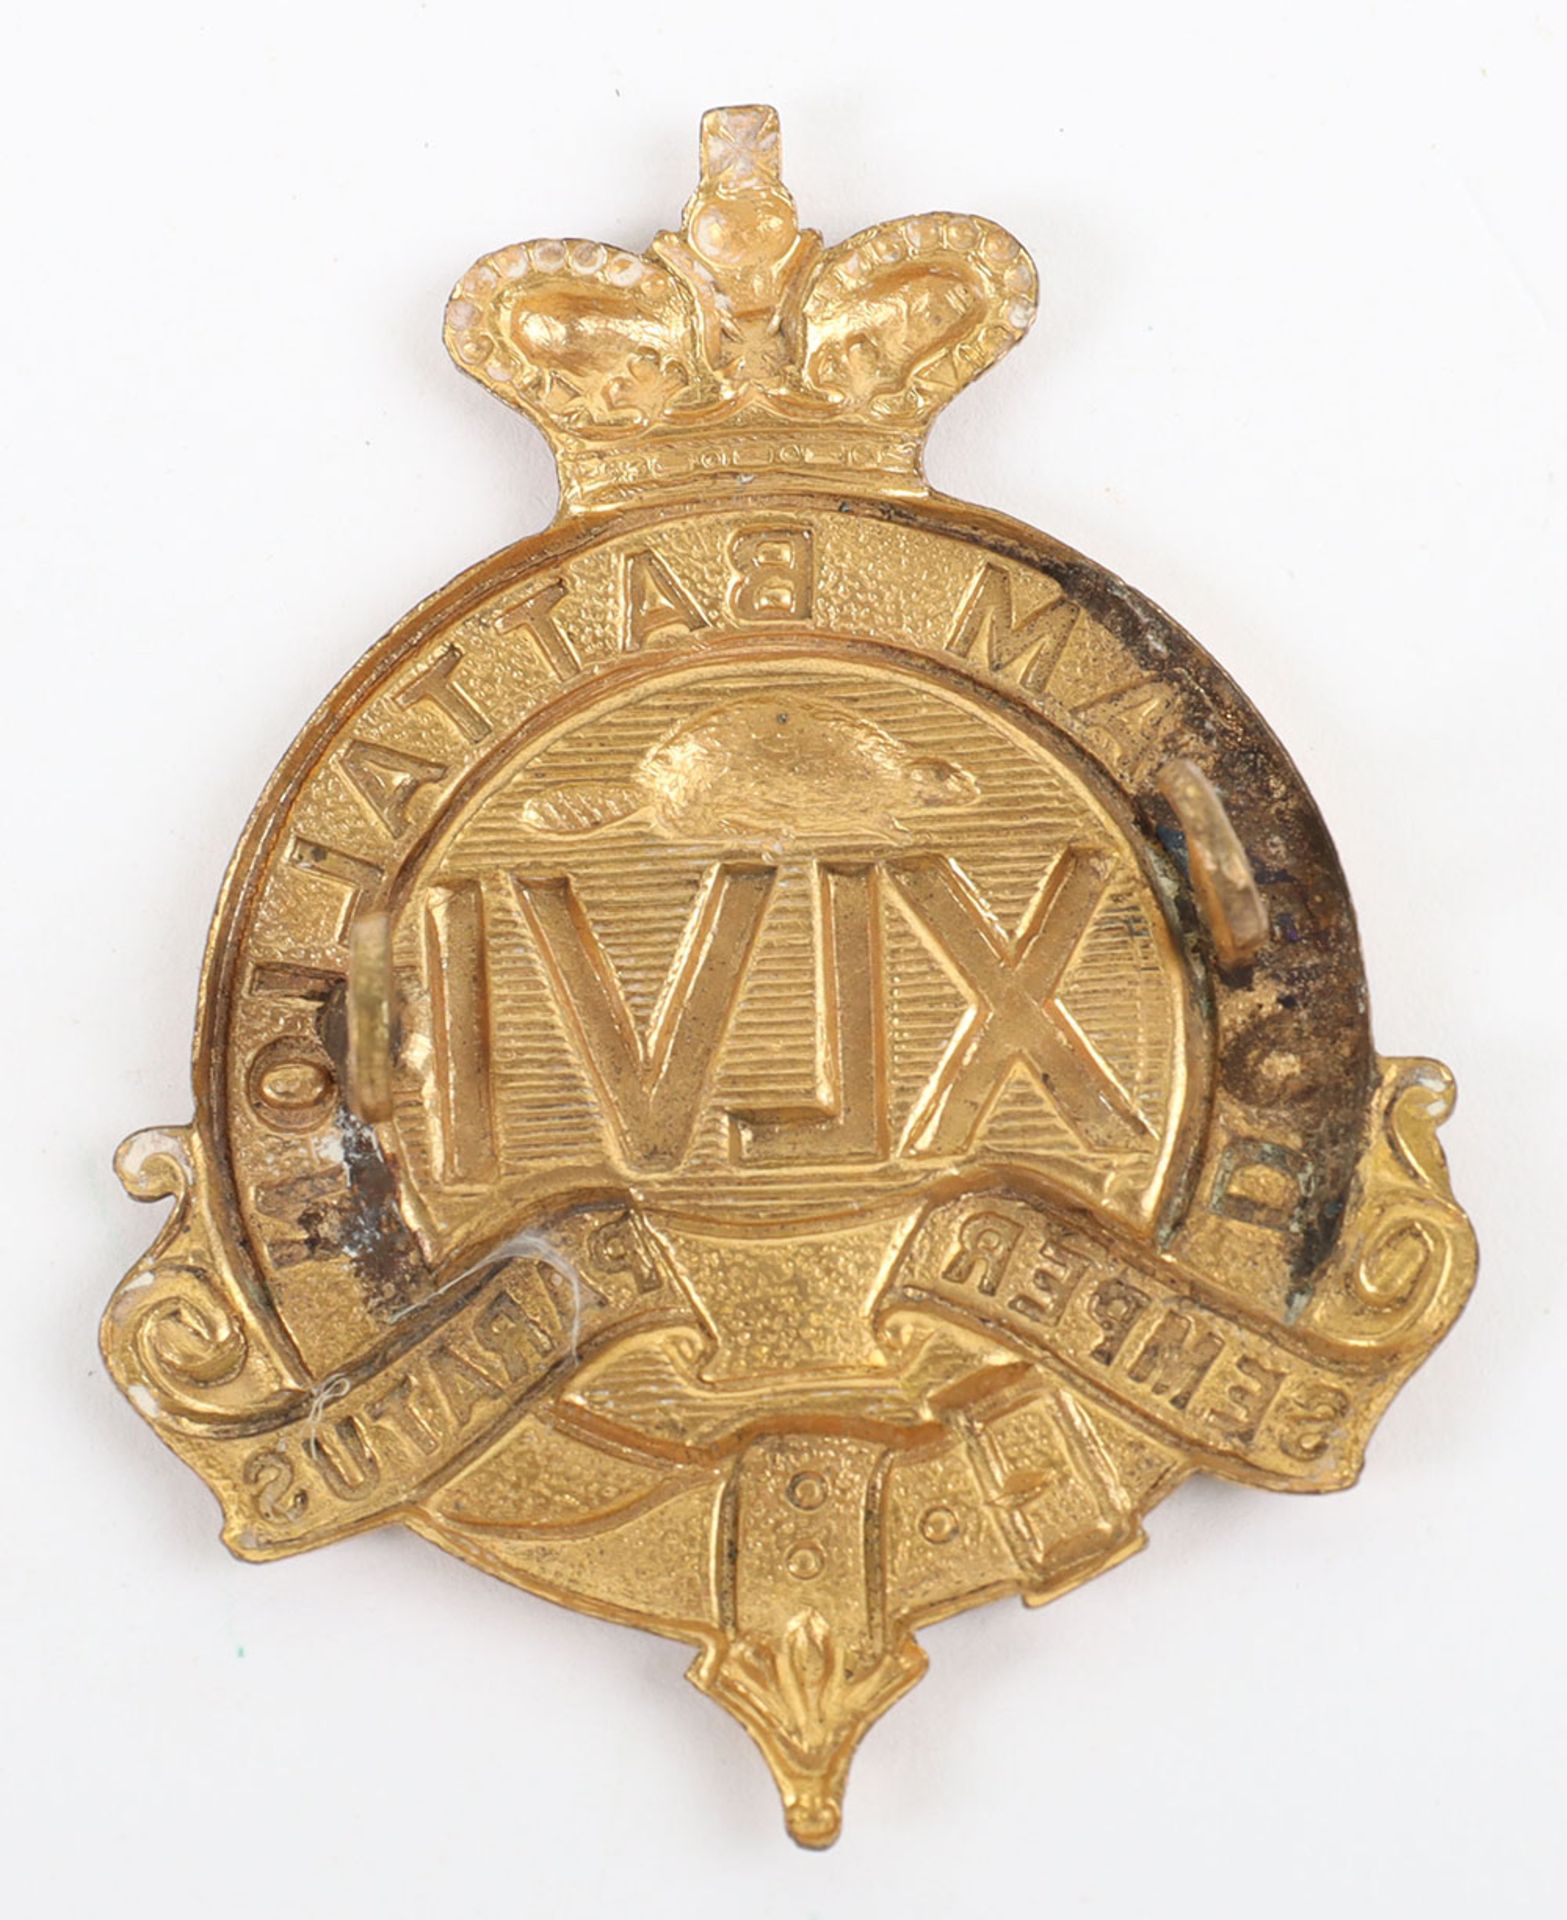 Canadian Militia 46th Durham Regiment Cap Badge - Image 2 of 2